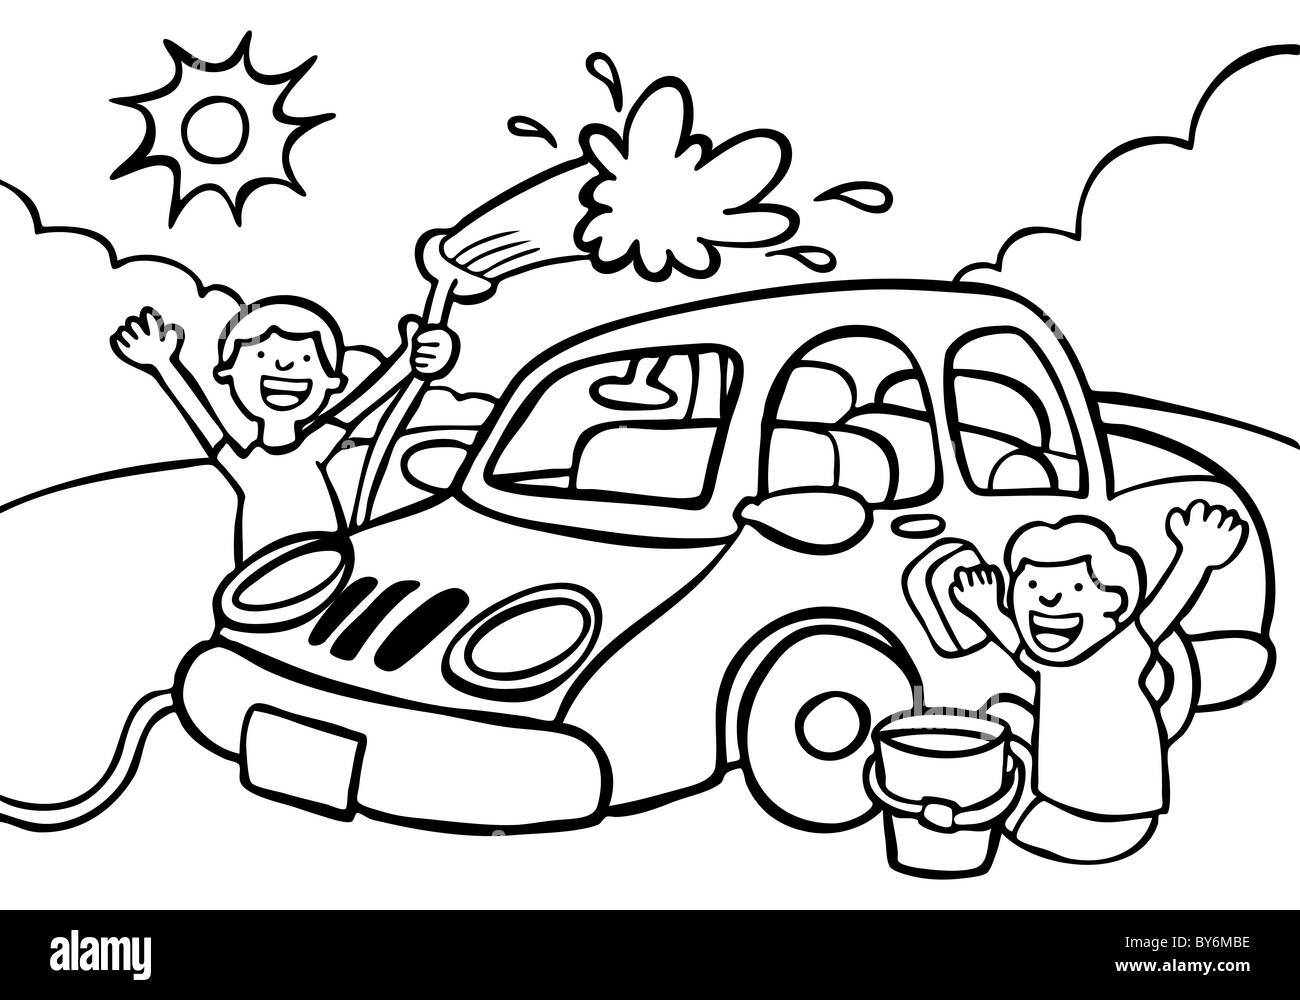 Comic Bild Von Zwei Kindern Eine Autowasche Schwarz Weiss Version Stockfotografie Alamy